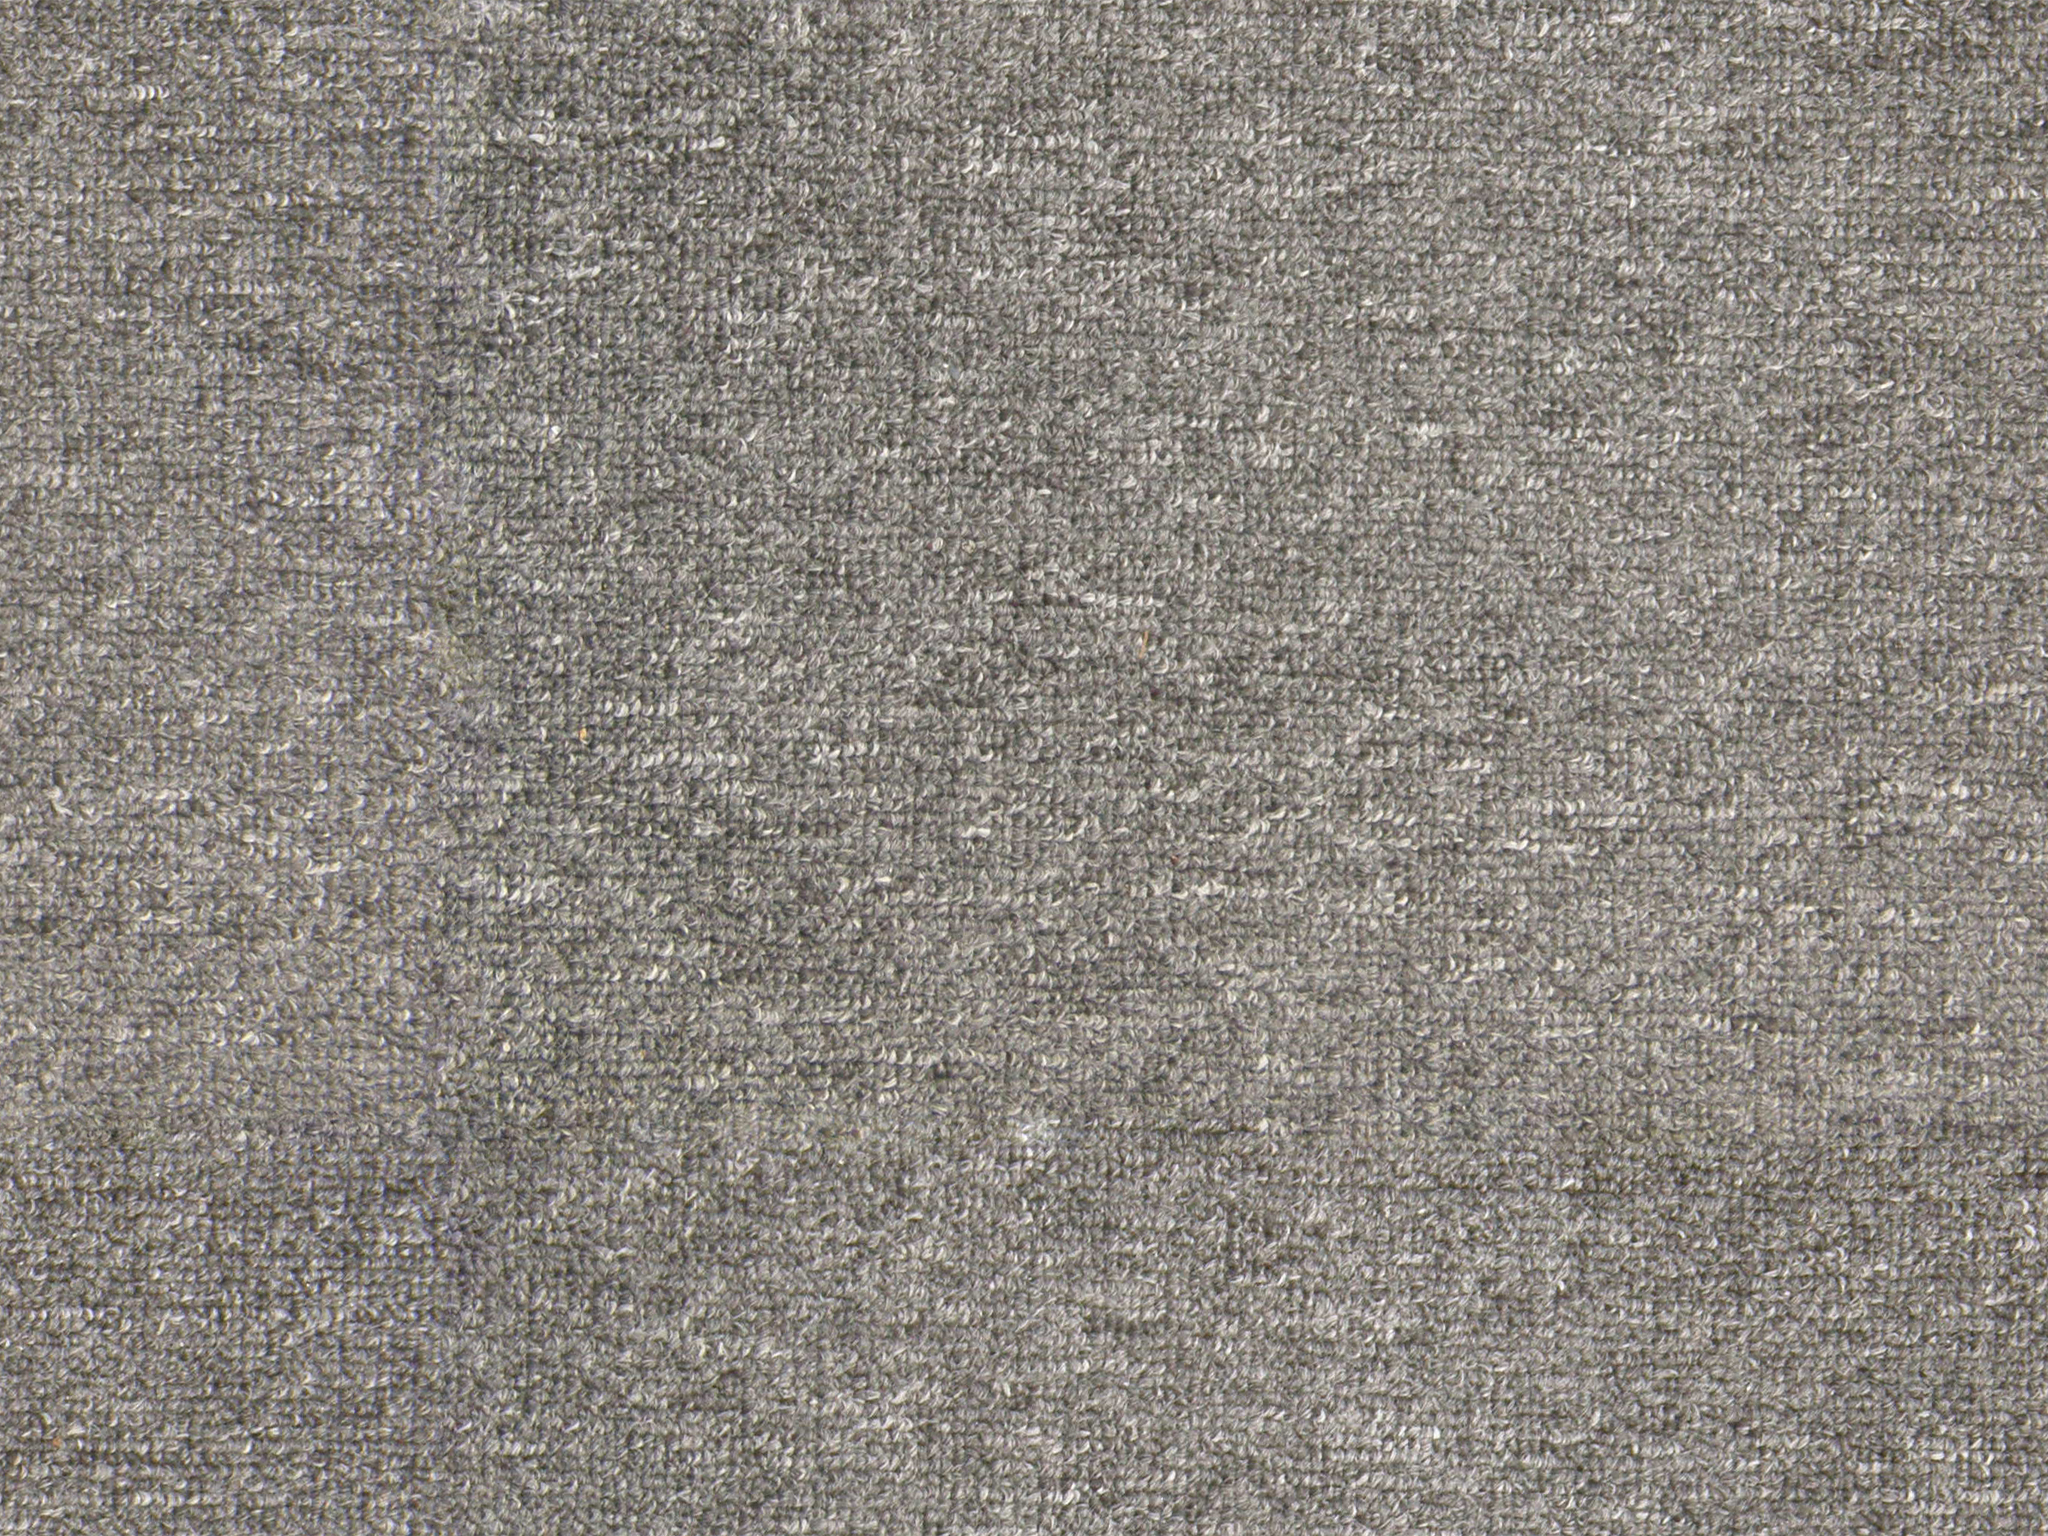 Tileable Carpet texture - Texture - ShareCG